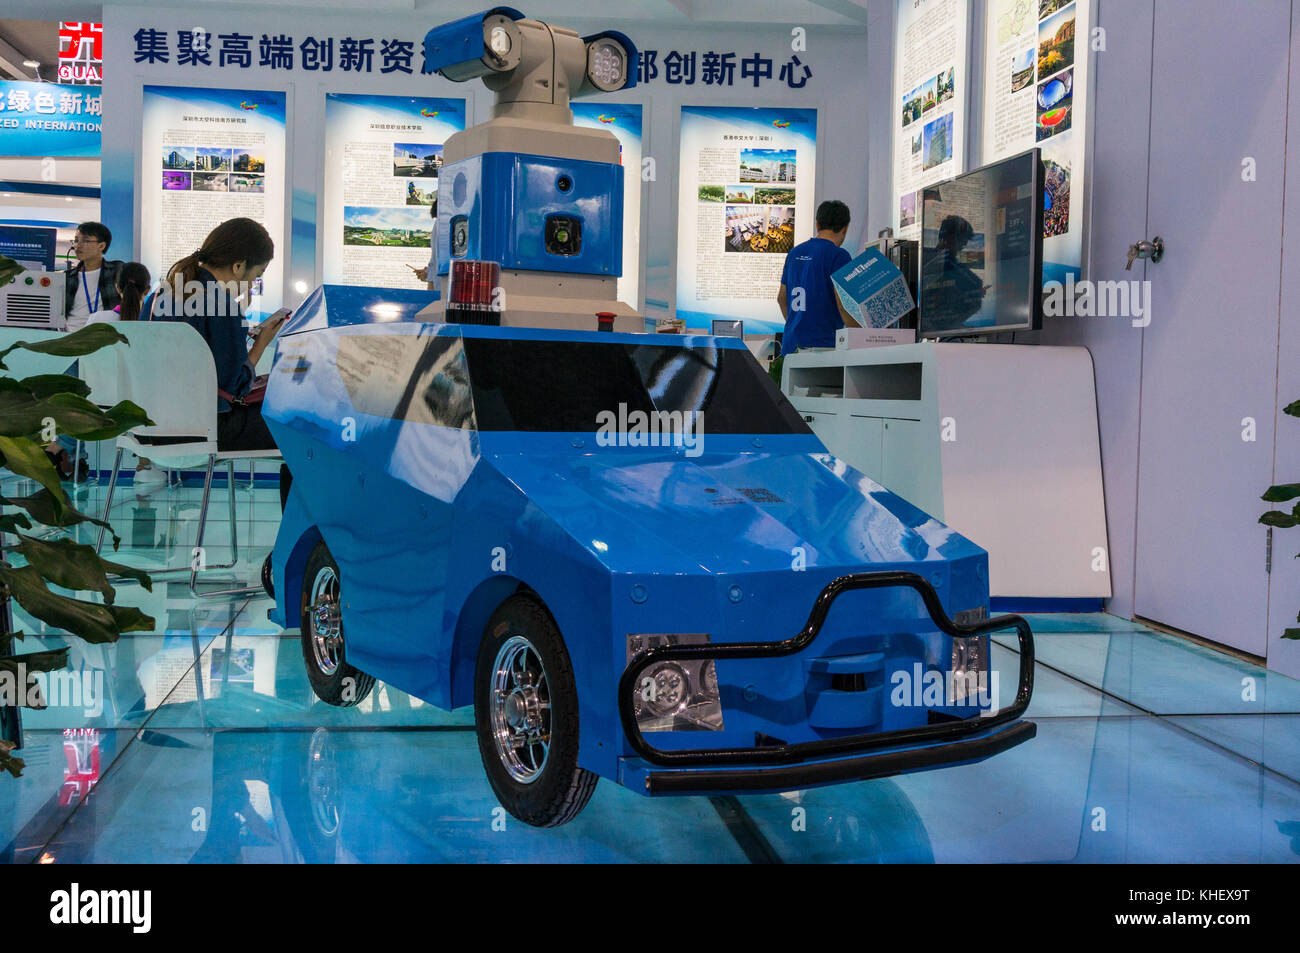 Location de voiture auto-hi-tech de la Chine à l'exposition universelle de Shanghai, connue sous le nom de "silicon valley" de la Chine, Shenzhen, Chine. Banque D'Images